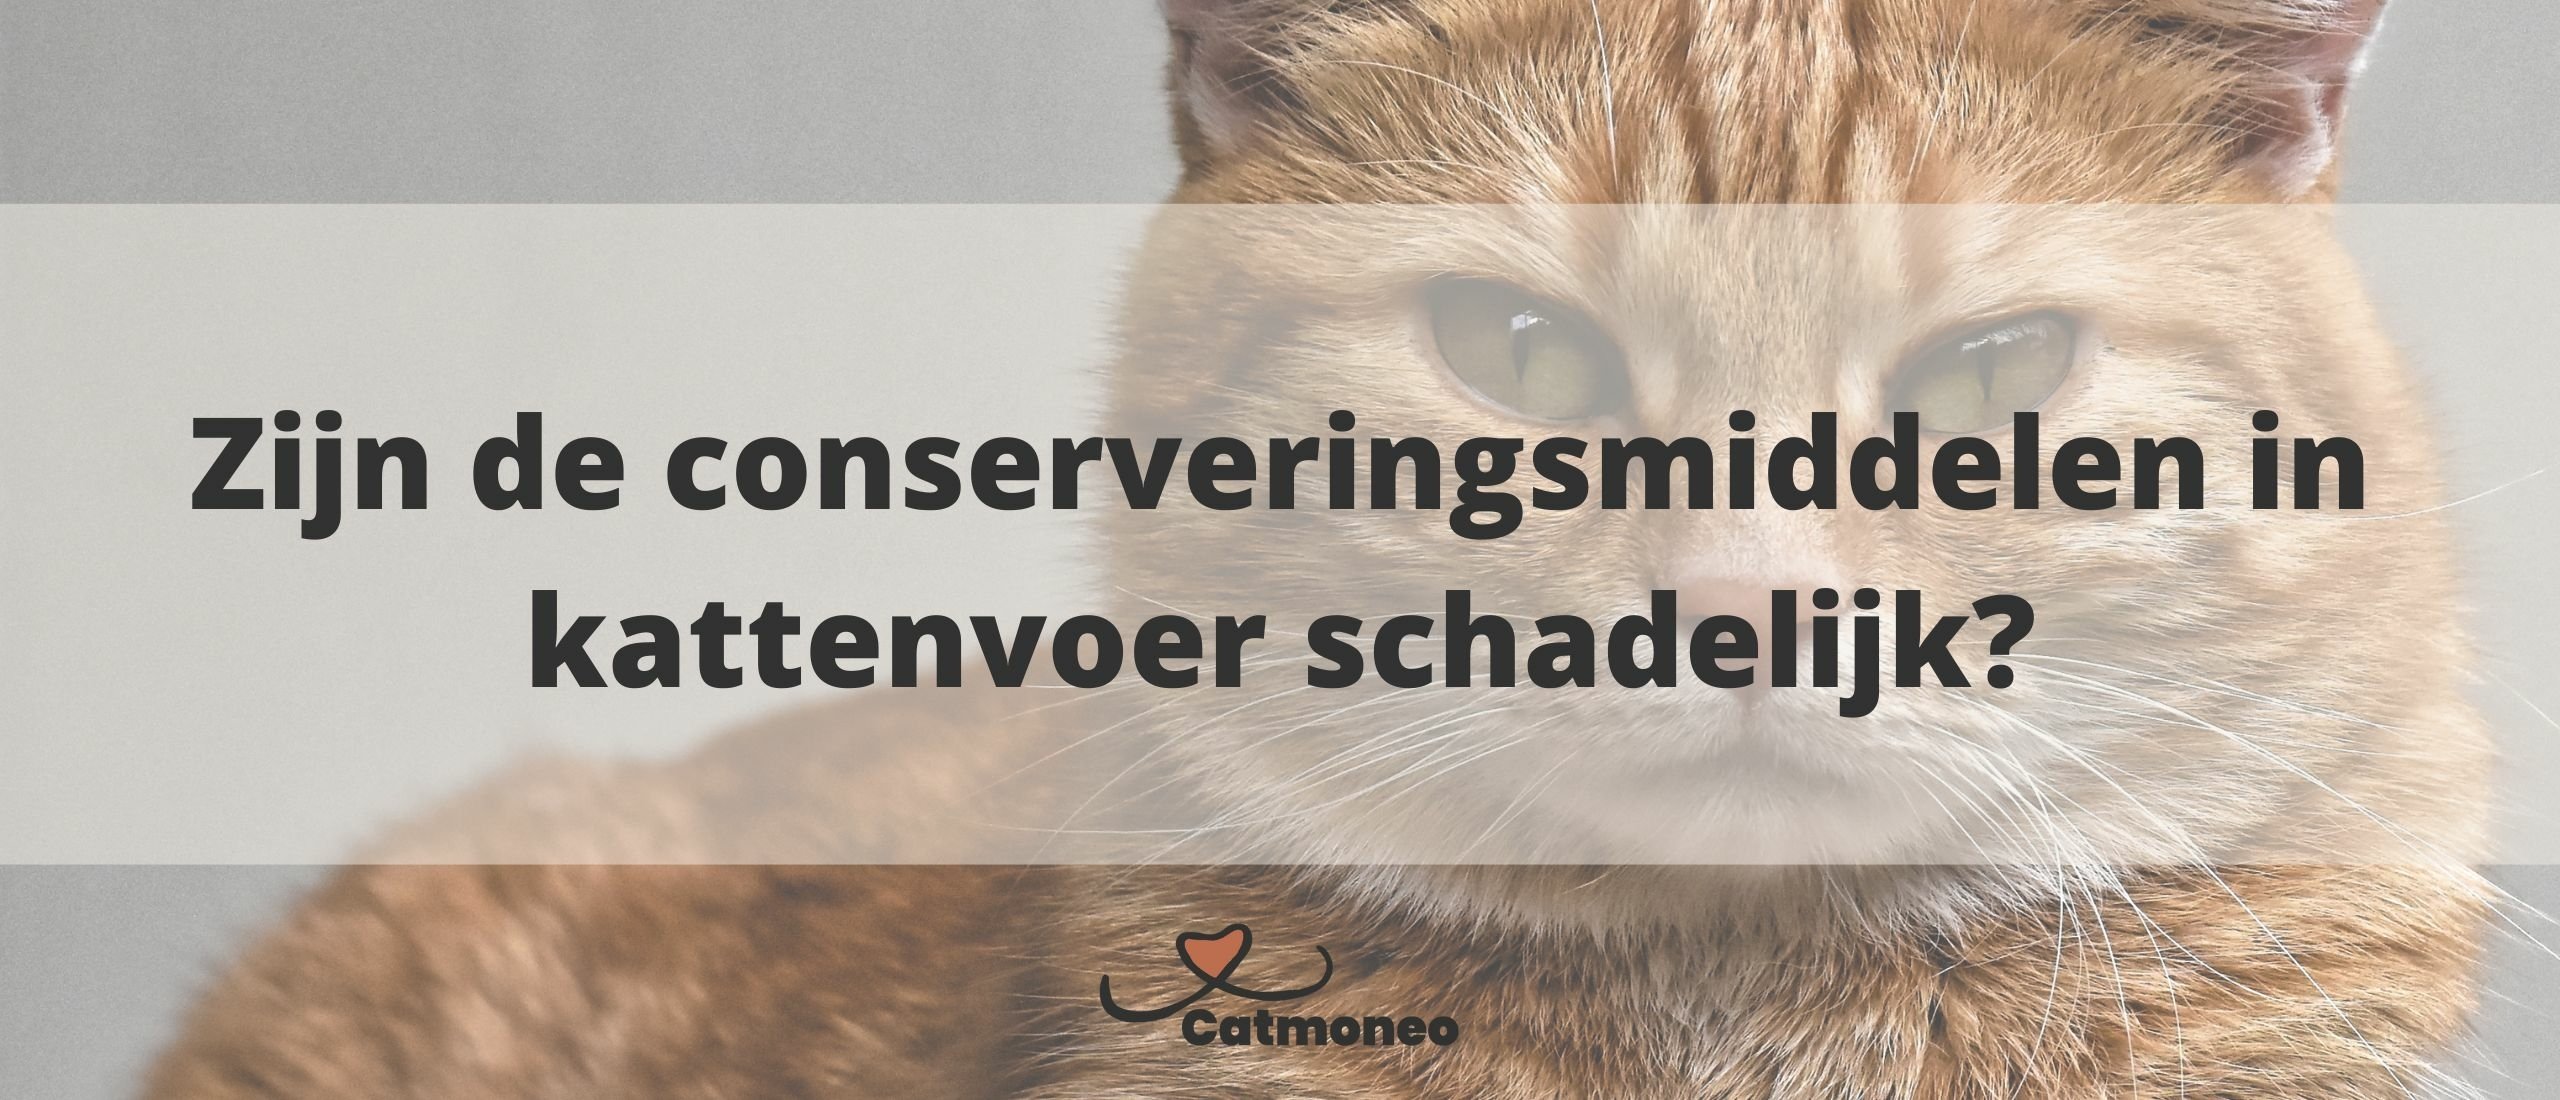 Zijn de conserveringsmiddelen in kattenvoer schadelijk?